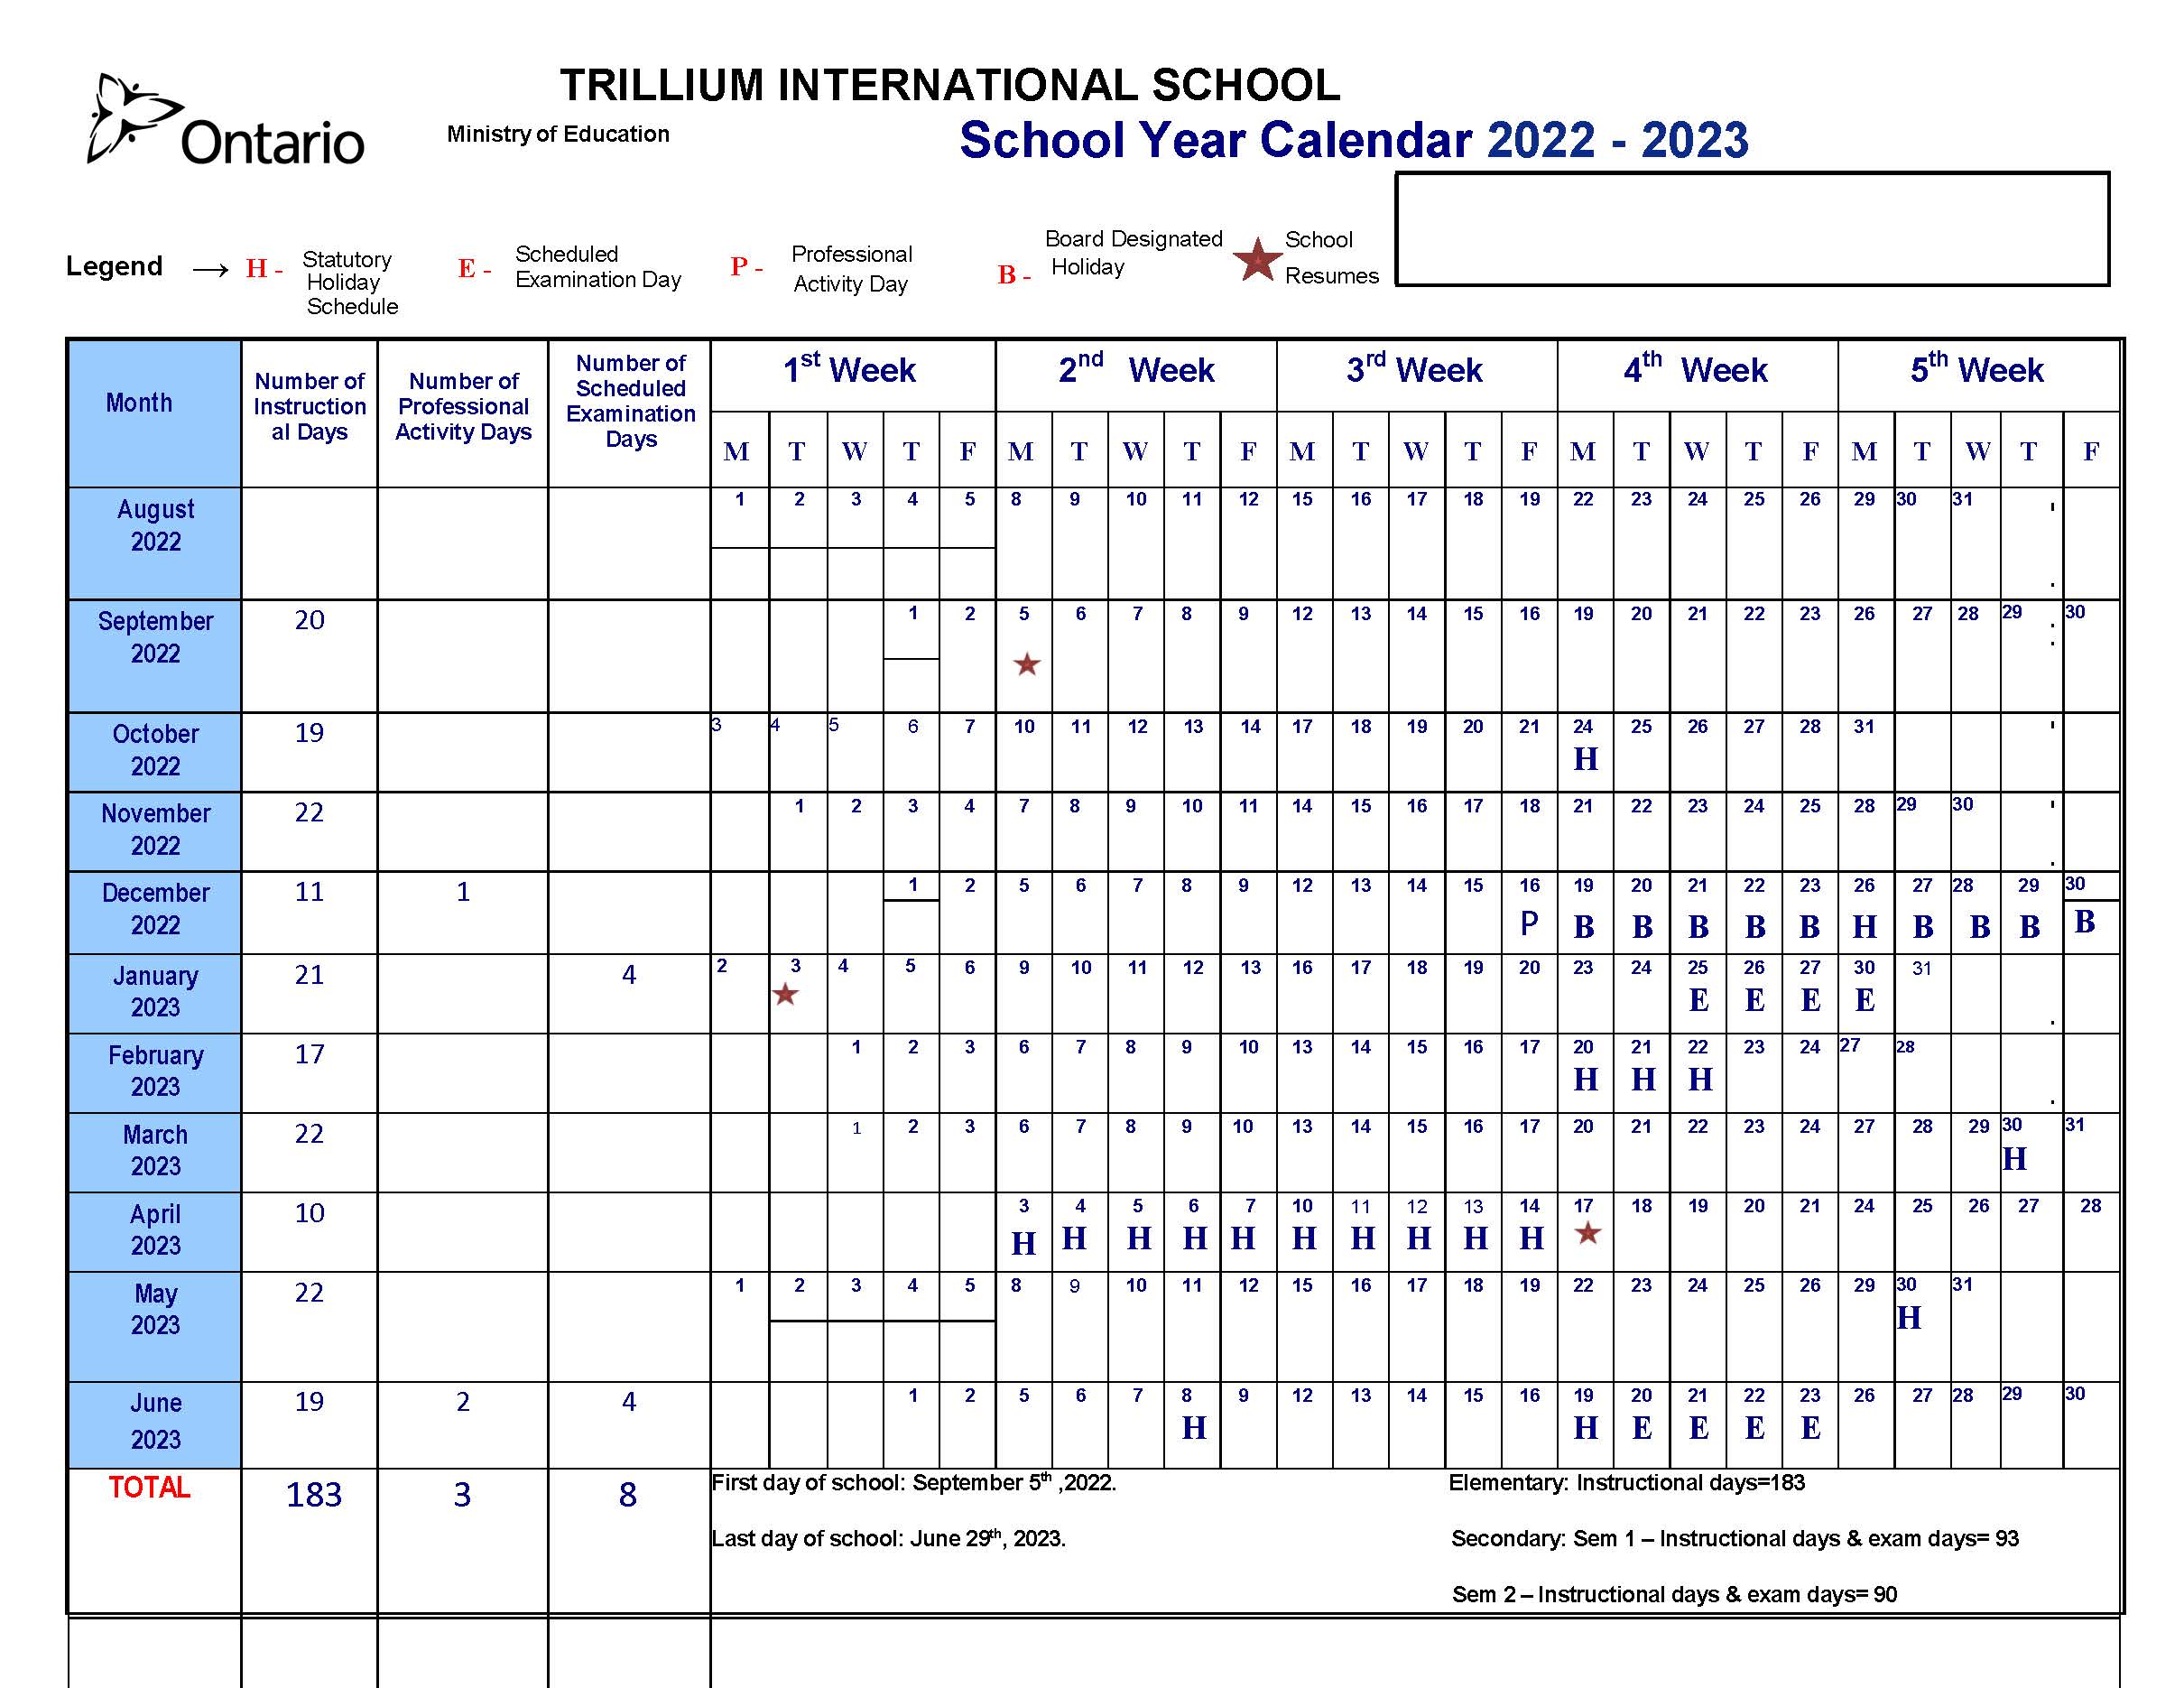 School Year Calendar 2022 2023 Trillium International School